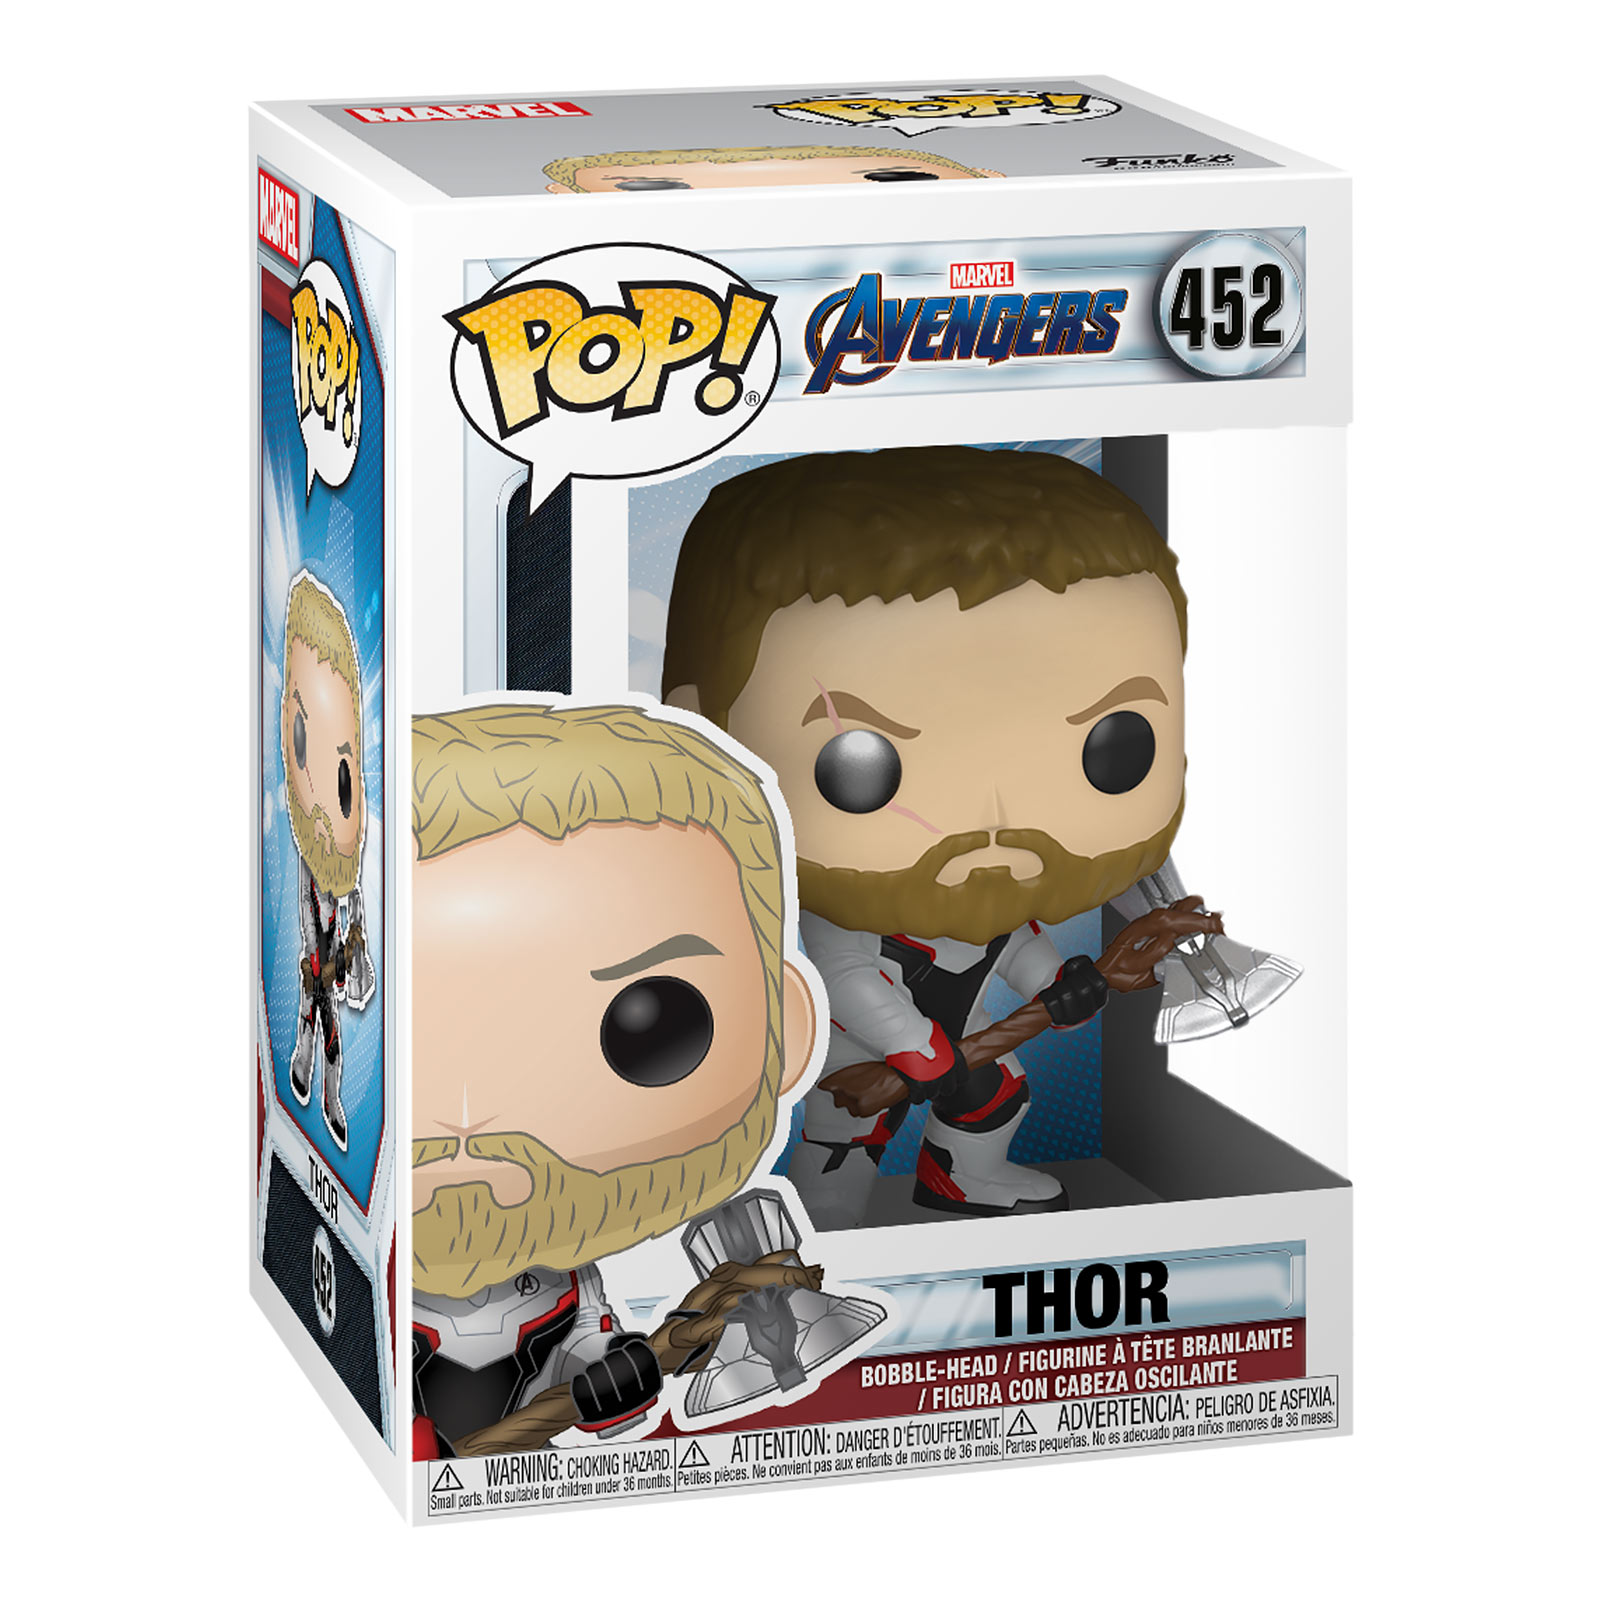 Avengers - Thor Endgame Funko Pop bobblehead figure